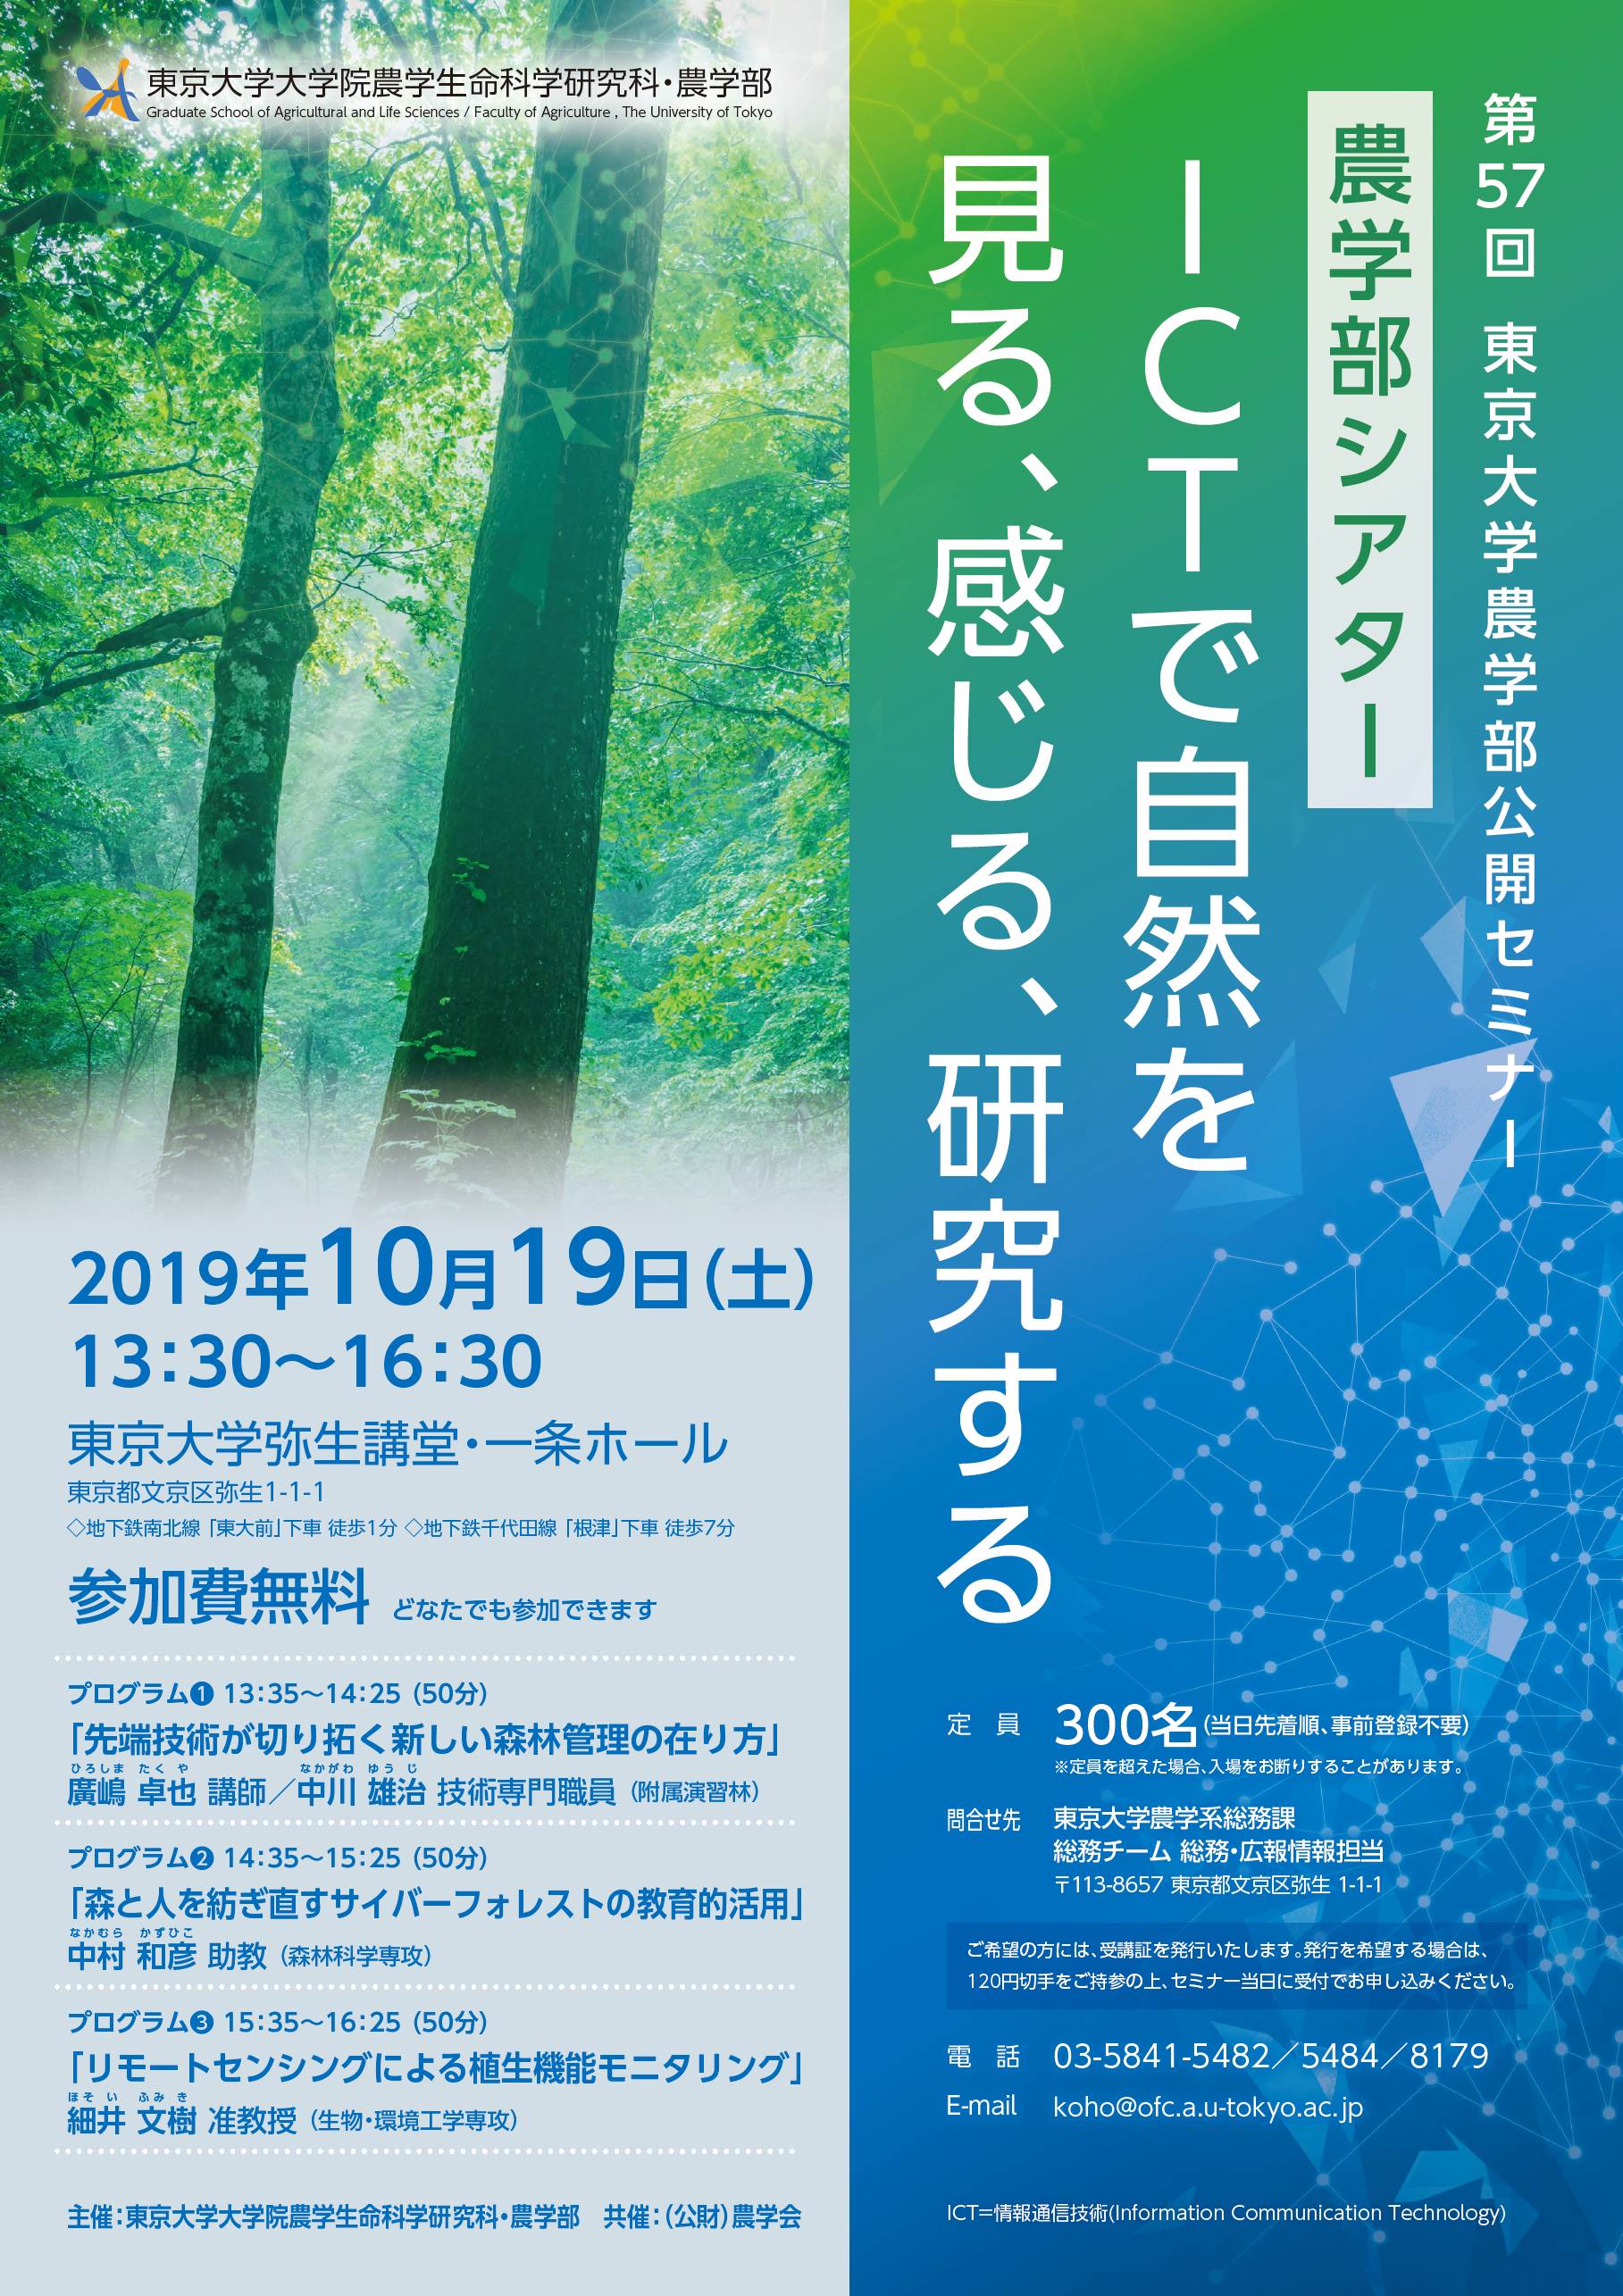 東京大学農学部公開セミナー「農学部シアター：ICTで自然を見る、感じる、研究する」の開催